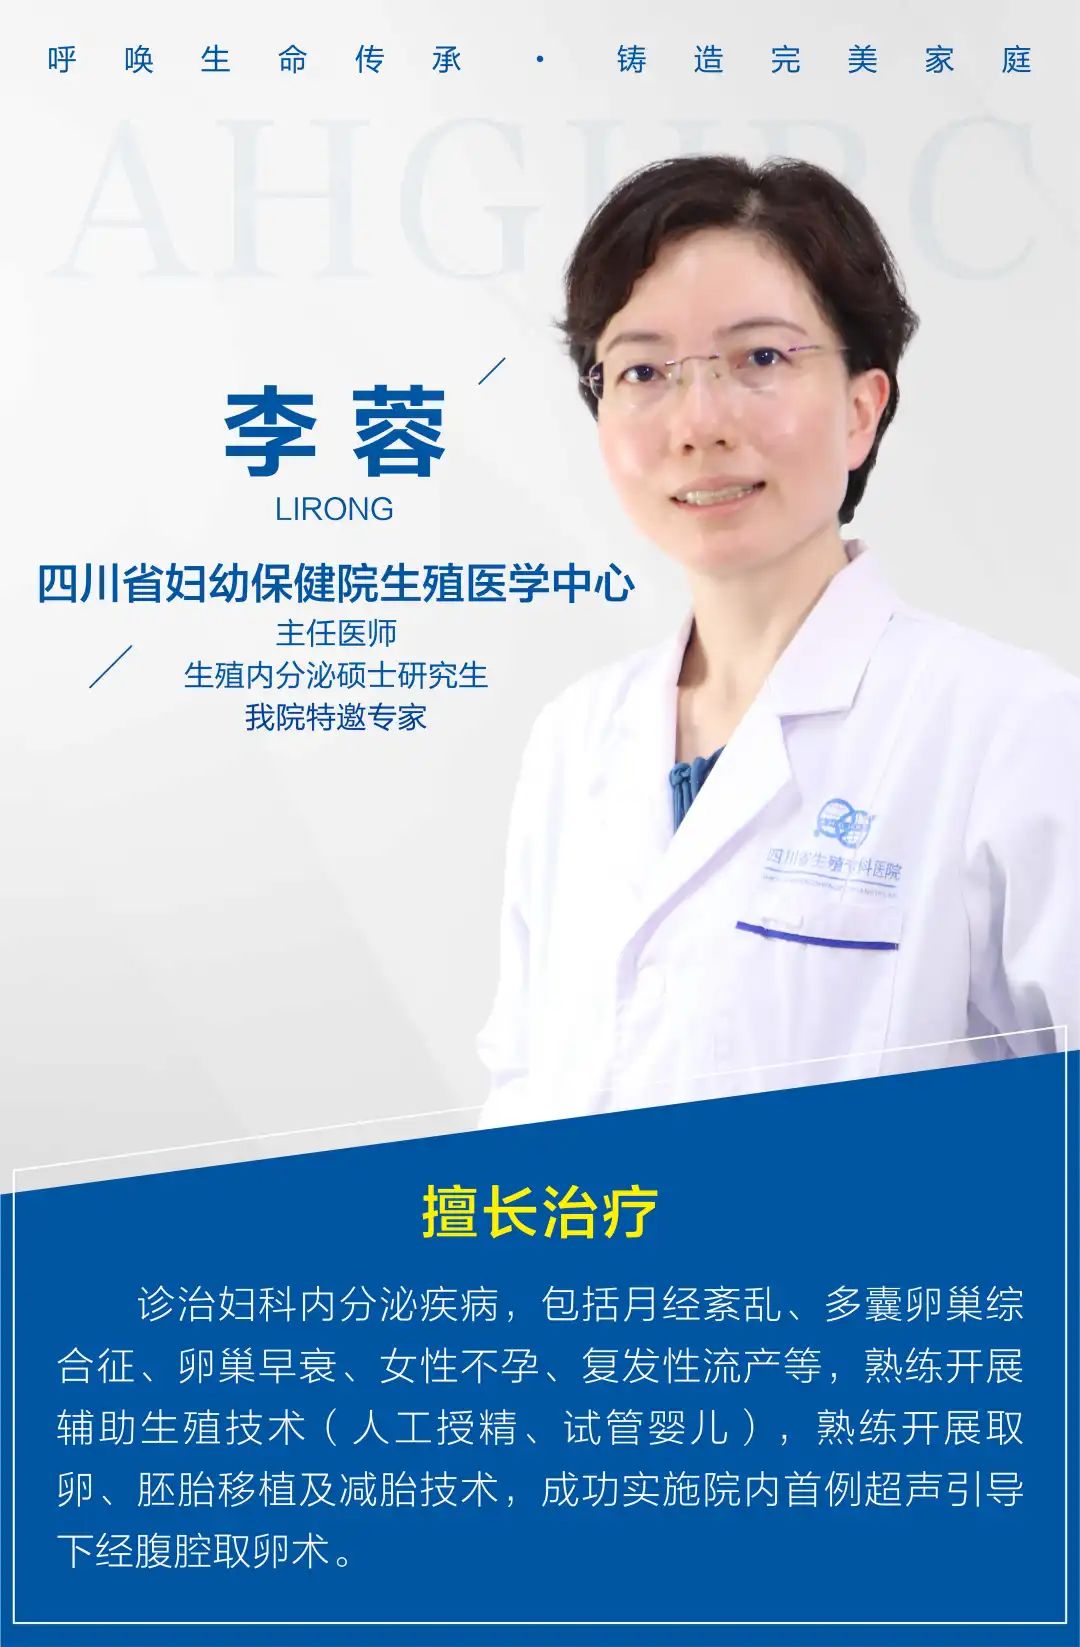 四川省妇幼保健院的辅助生殖专家李蓉主任